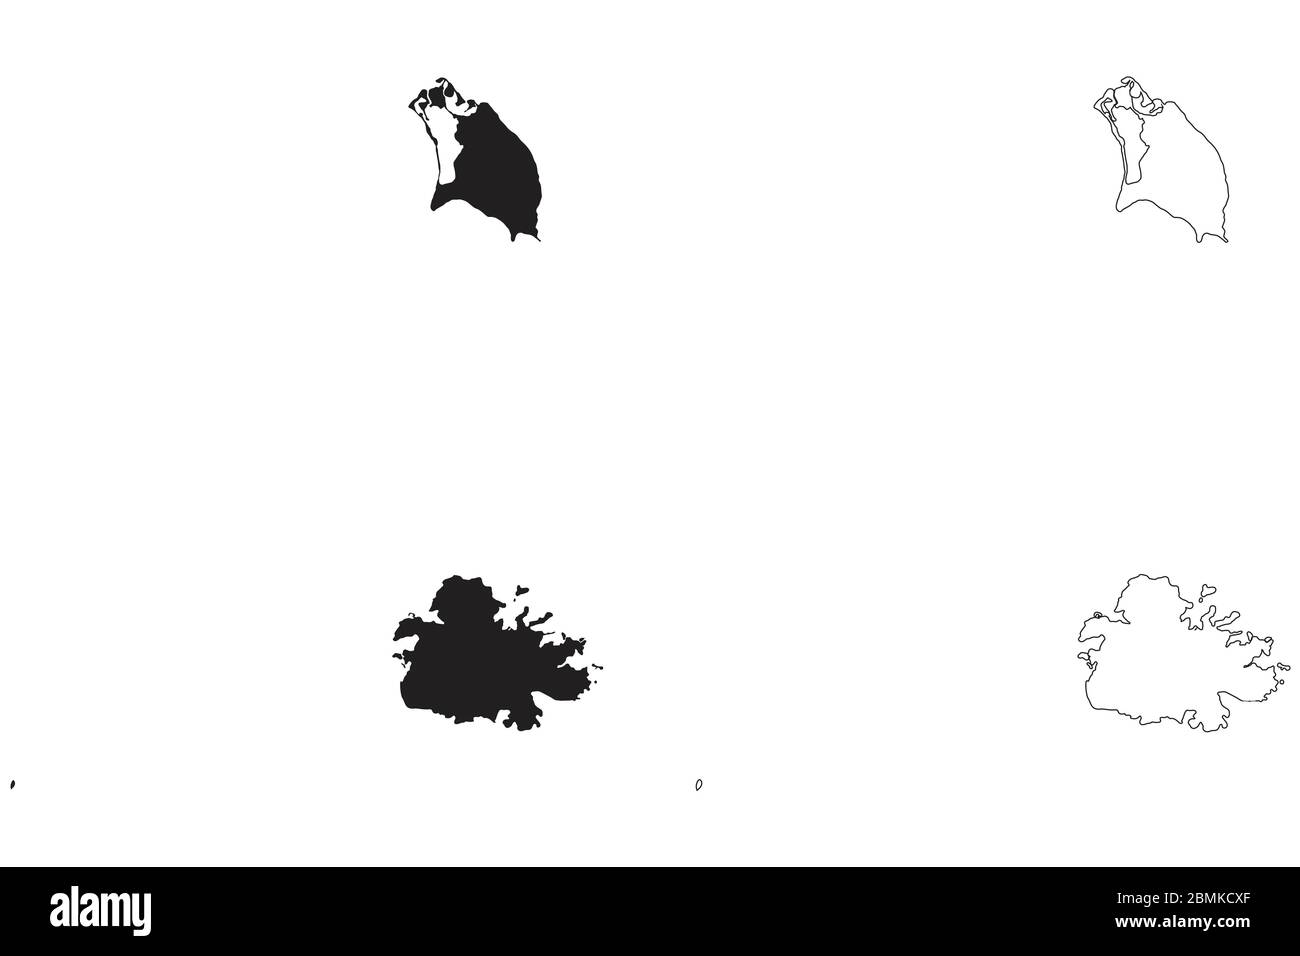 Antigua und Barbuda Länderkarte. Schwarze Silhouette und Umriss isoliert auf weißem Hintergrund. EPS-Vektor Stock Vektor